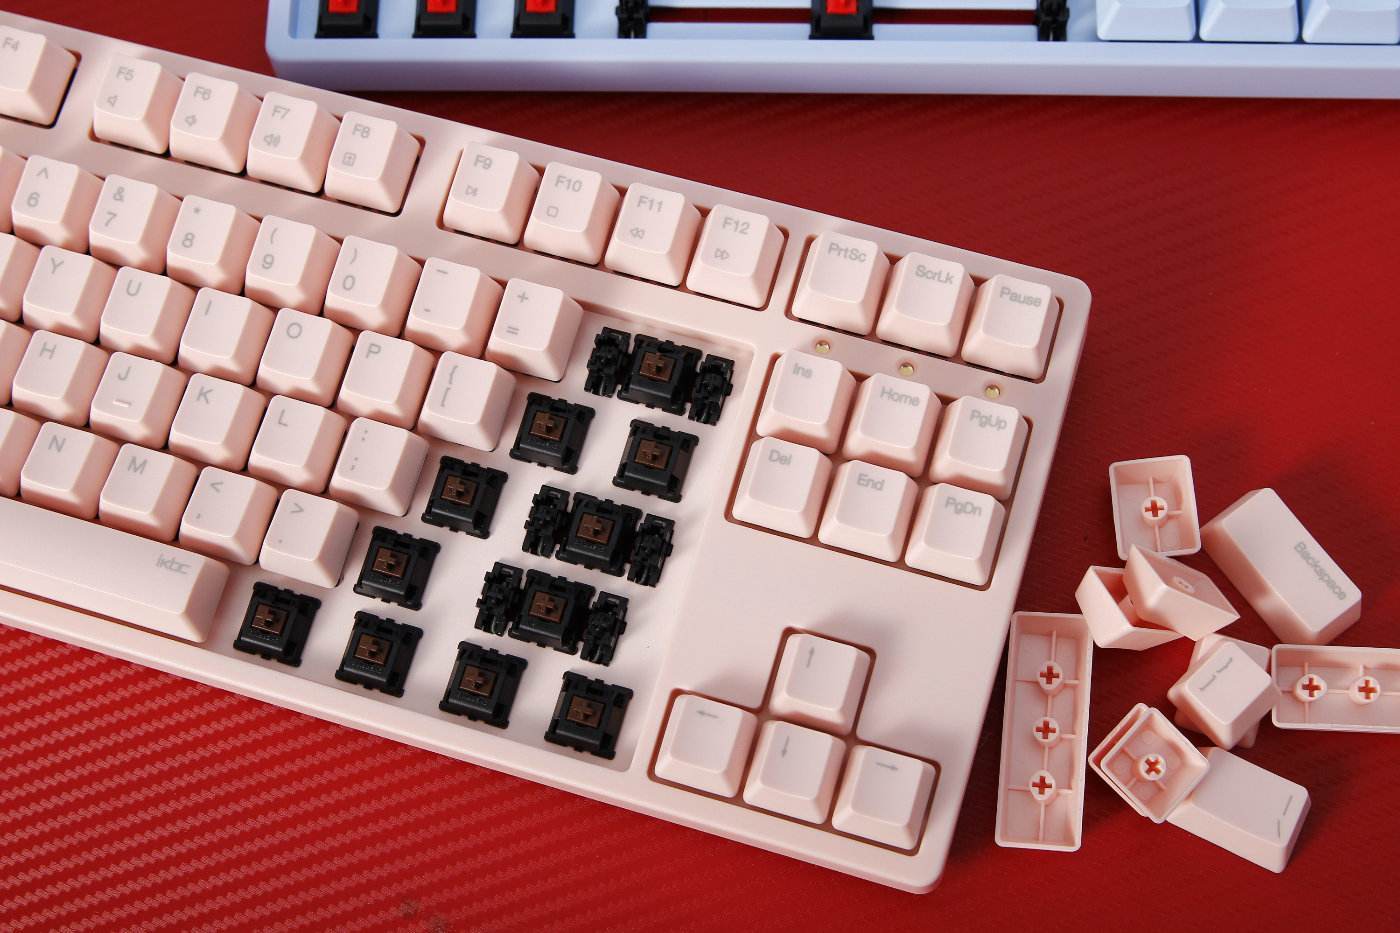 鼠标和键盘是最常用的输入设备 键盘与鼠标都是输入设备